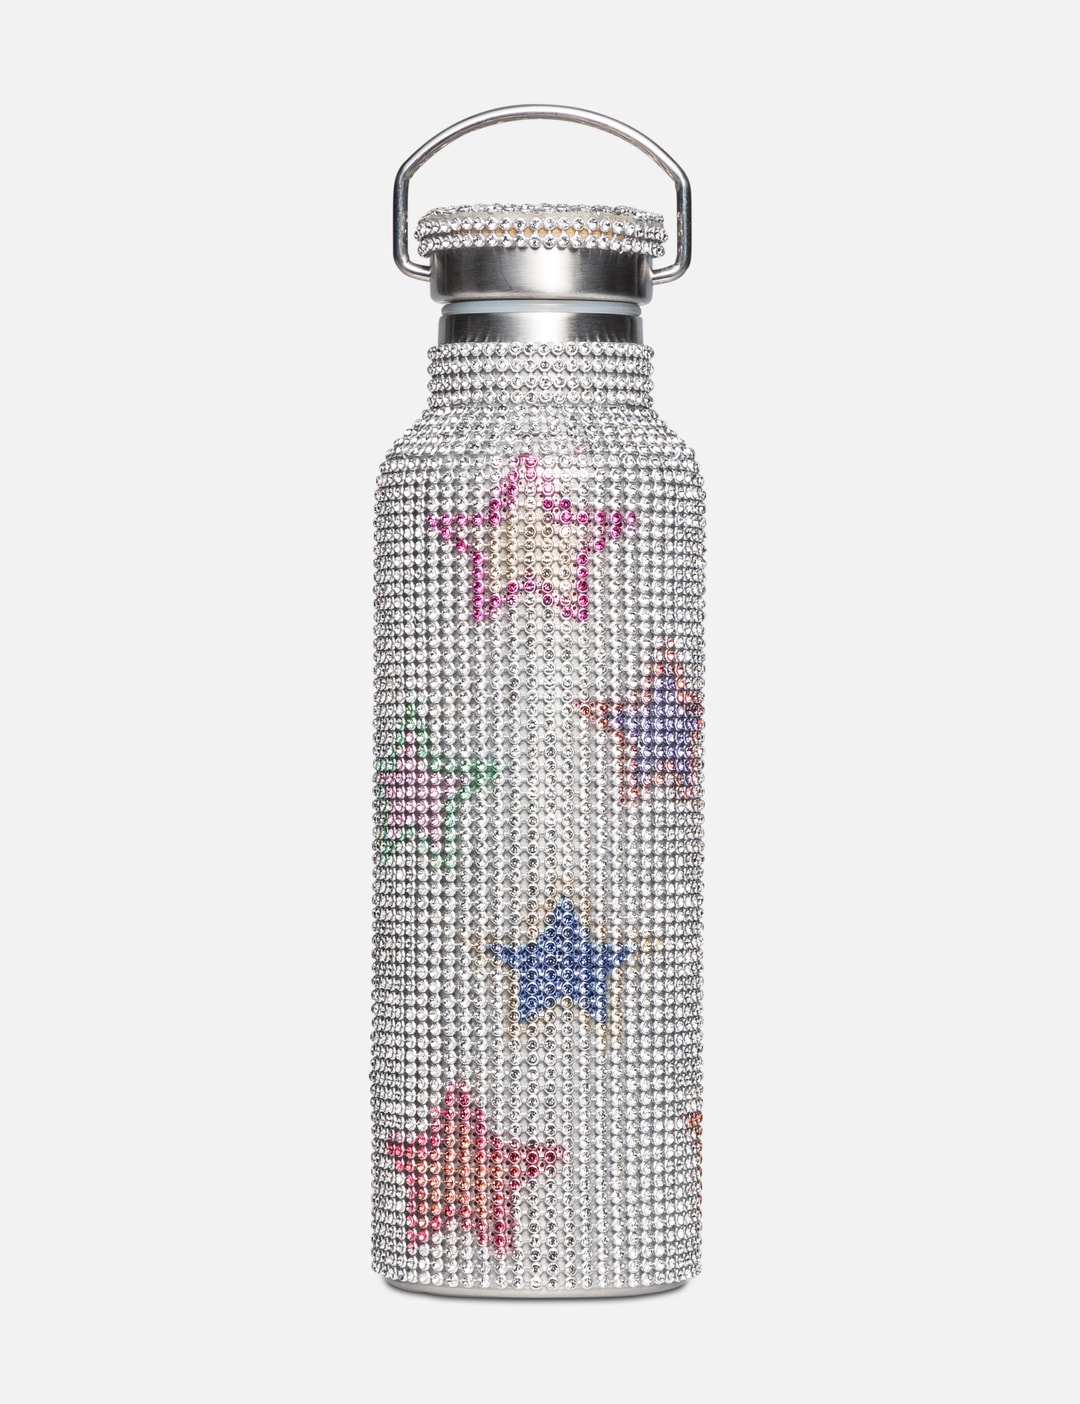 Strada, Insulated Stainless Steel Blender Bottle, White, 24 oz (710 ml)